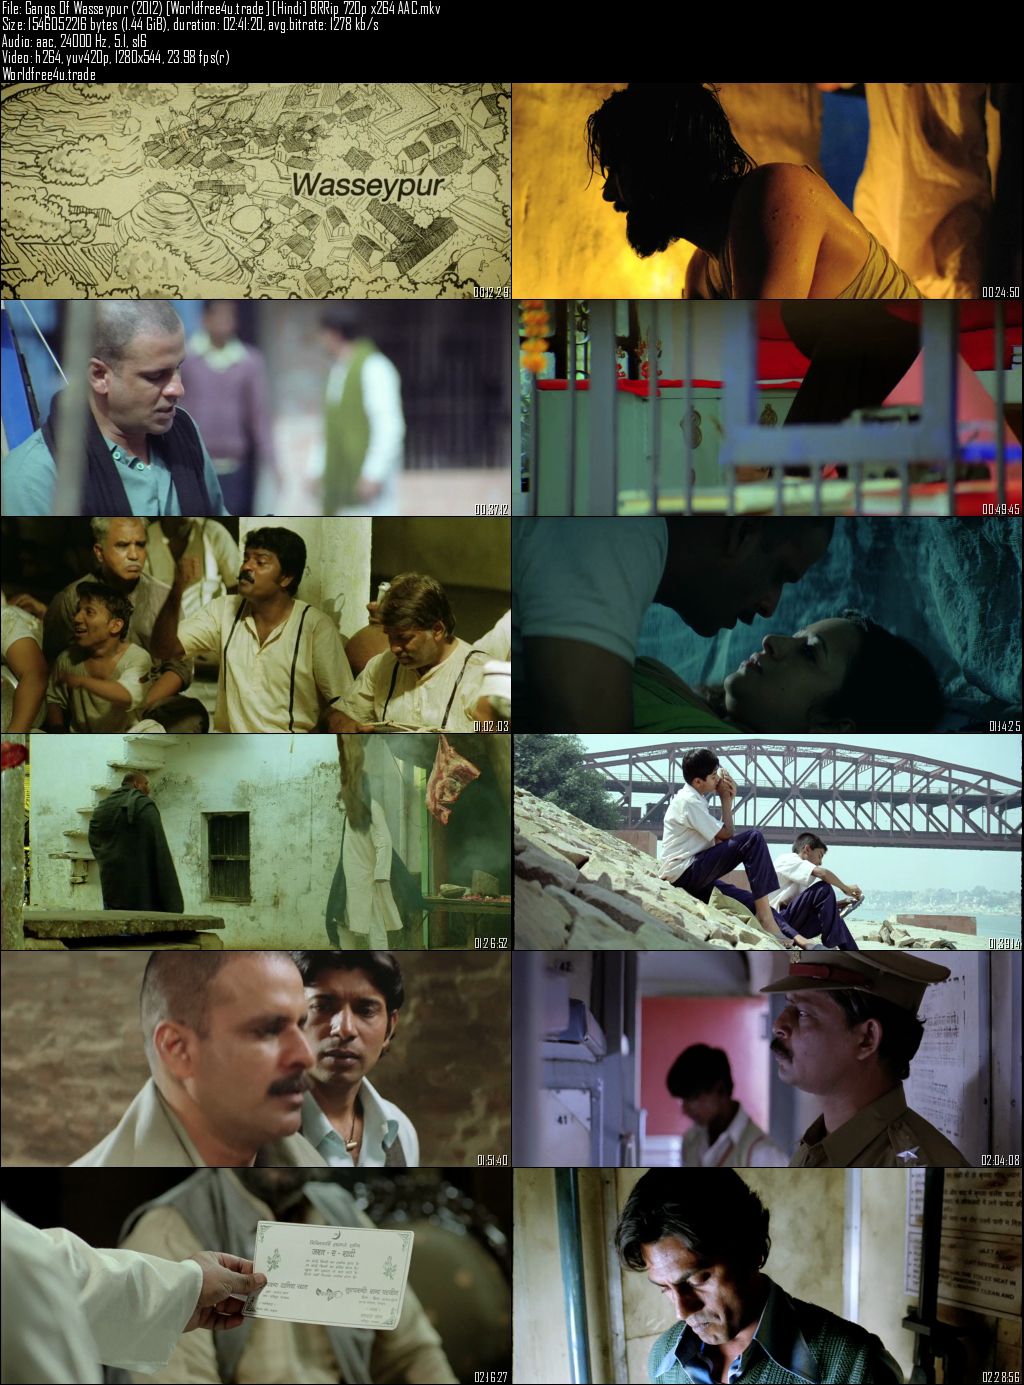 gangs of wasseypur 1 full movie download 720p